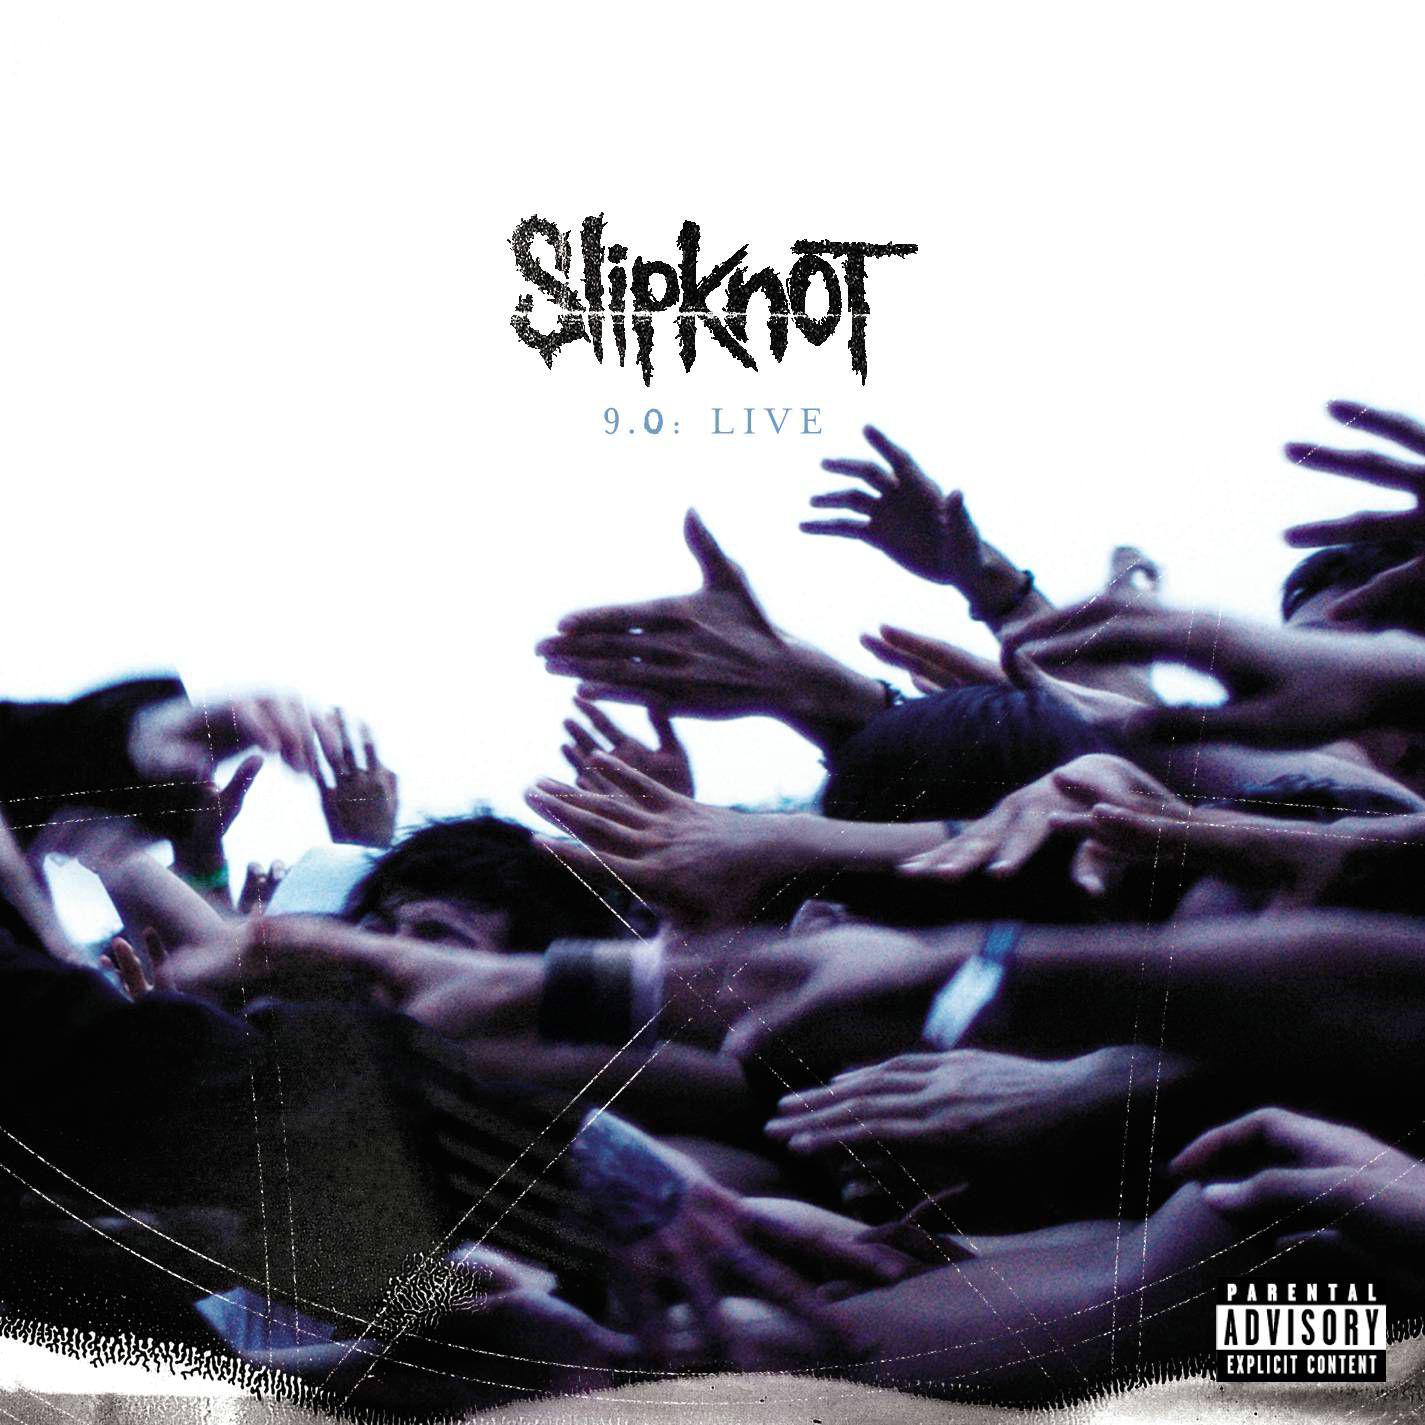 9 0 live. Slipknot 9.0. Live CD. Slipknot 9.0 Live обложка.